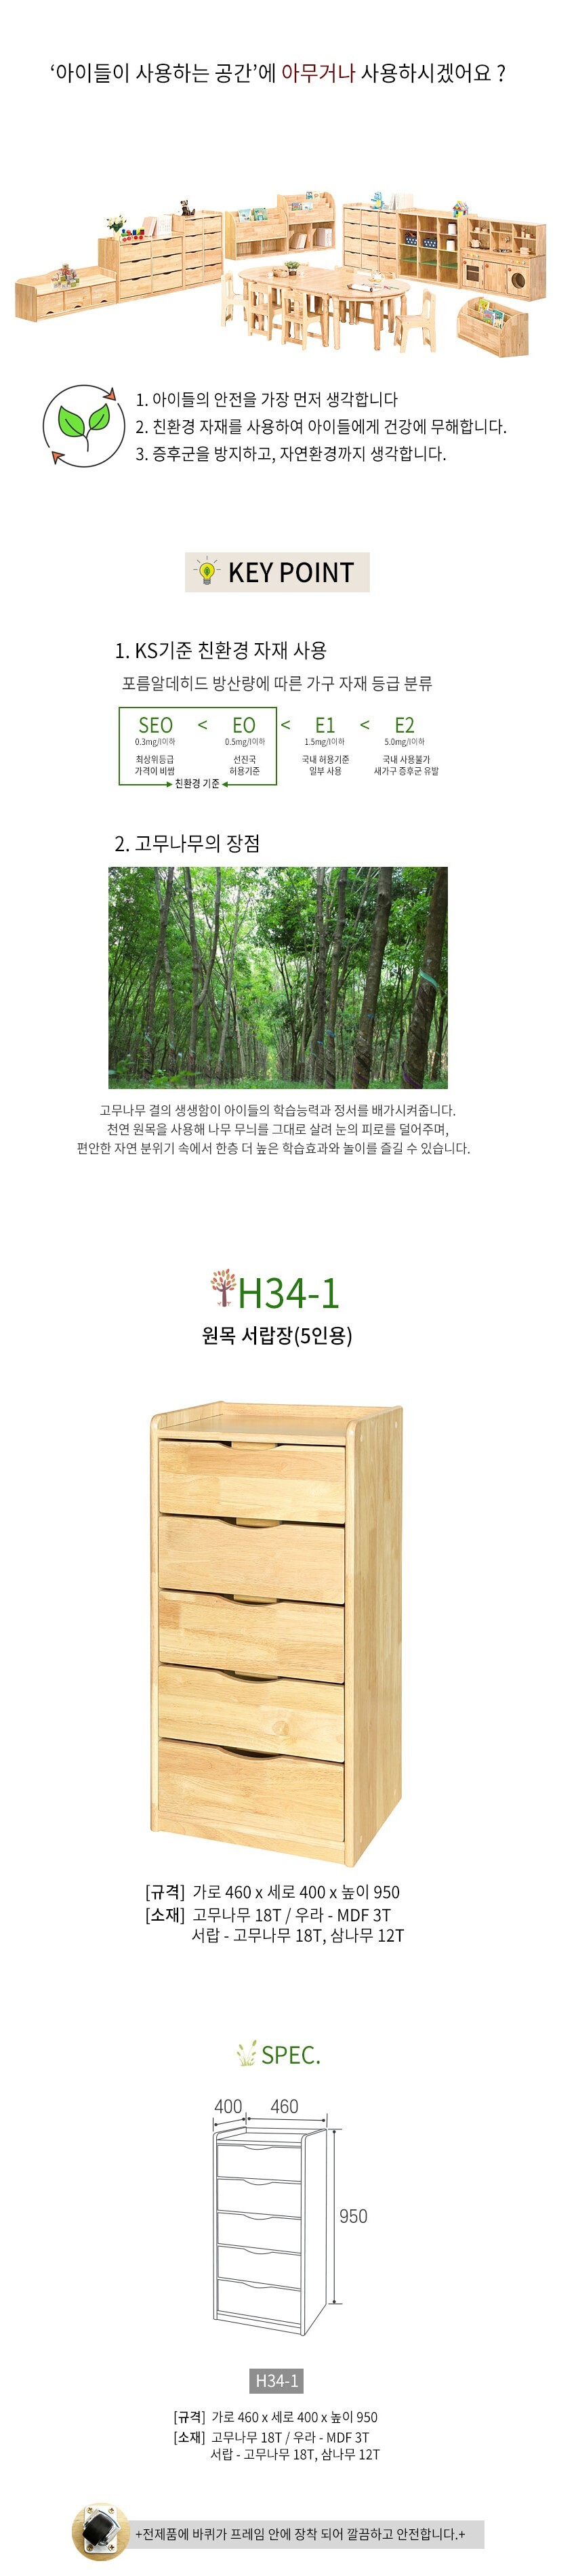 어린이 원목 서랍장(5인용) H34-1 